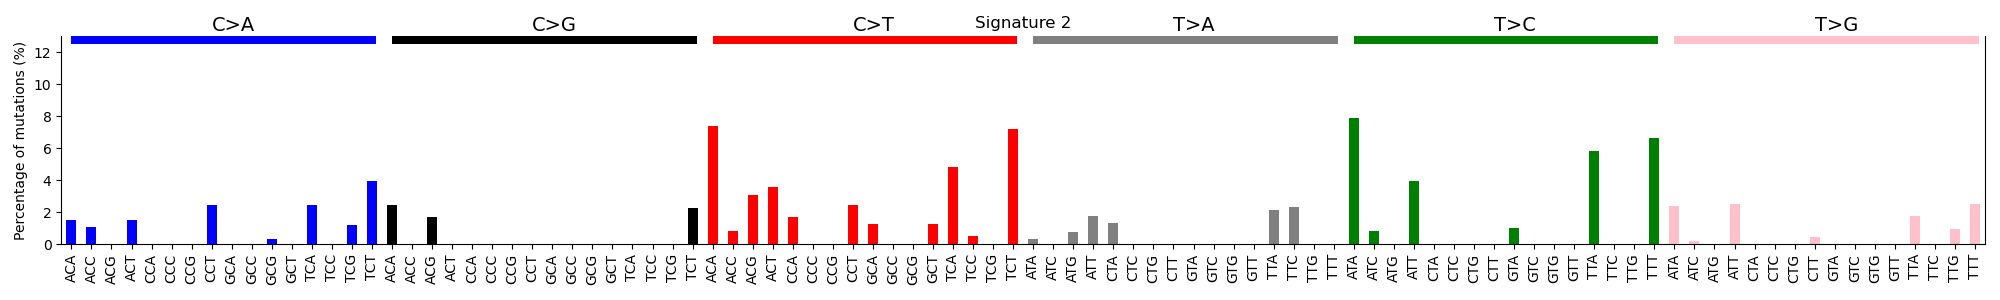 Fig10. Signature 2